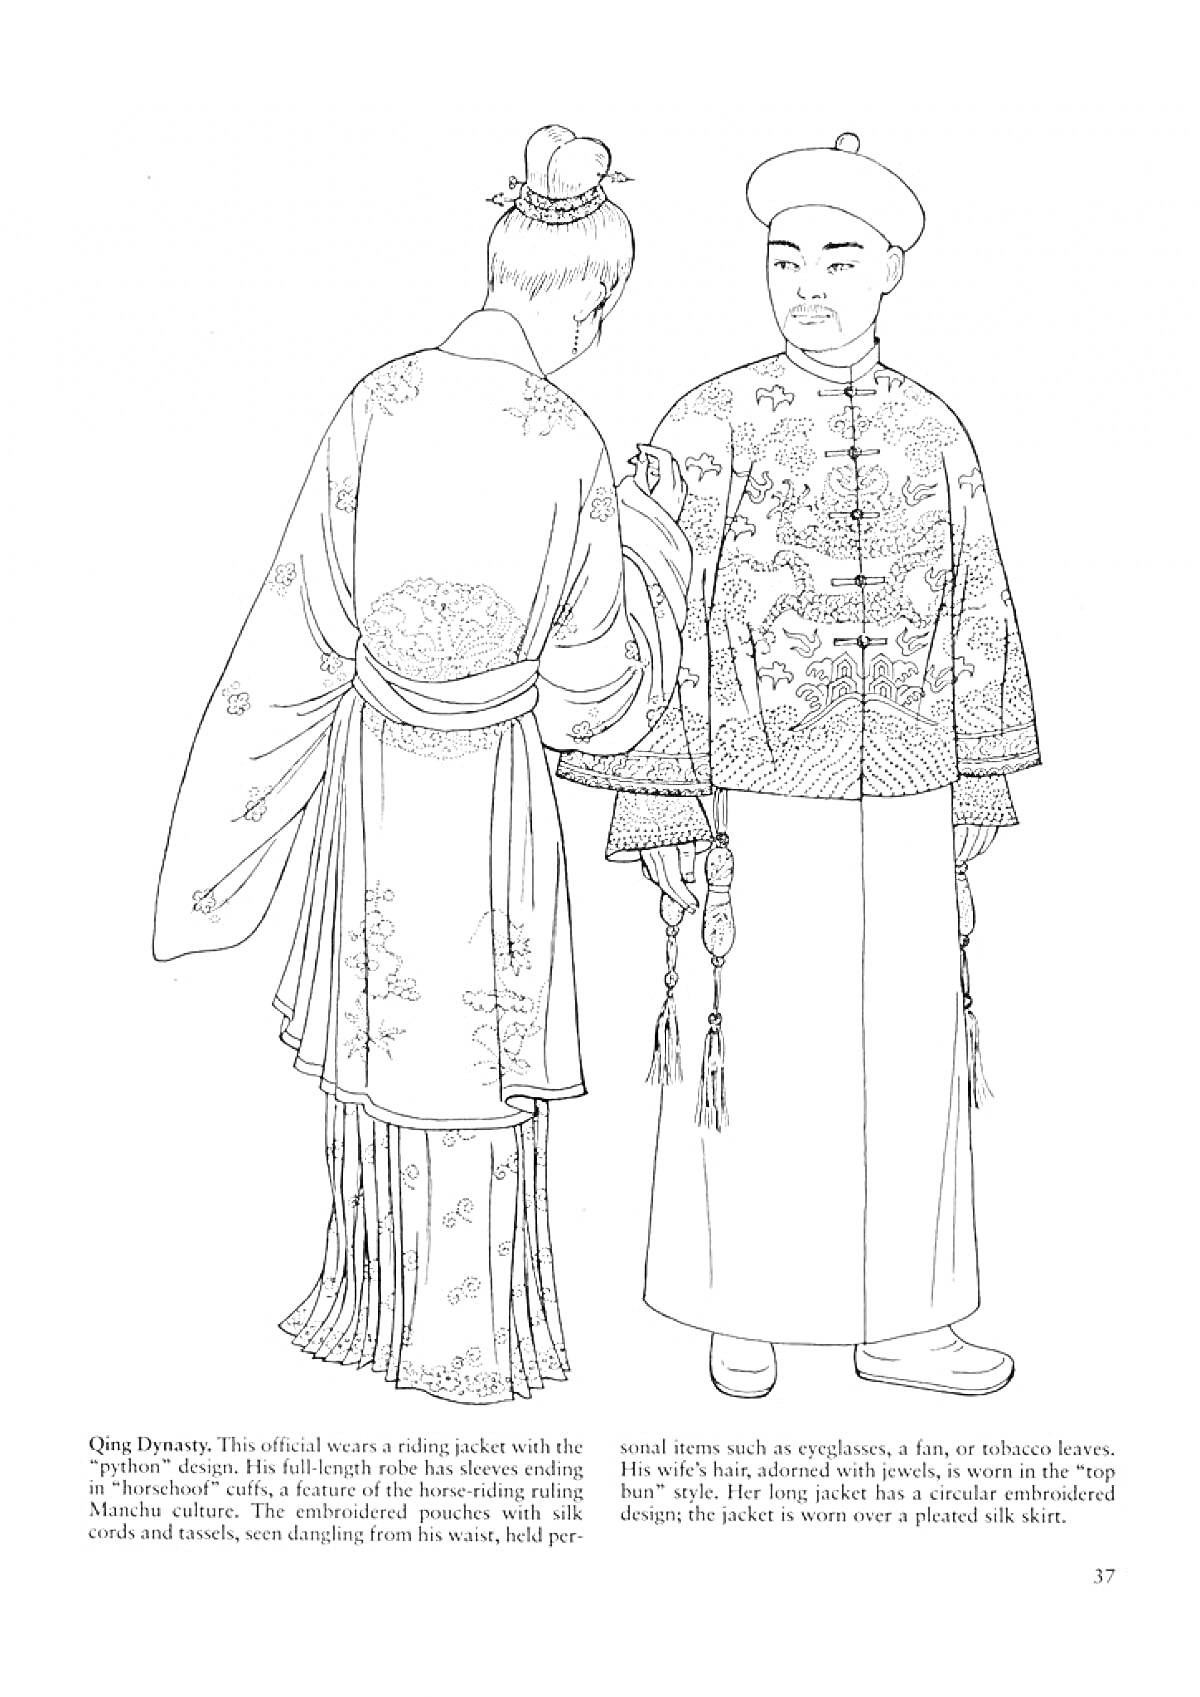  Дети в традиционных китайских костюмах династии Цинь: мальчик и девочка в длинных одеждах с узорами, девочка с высоким венком на голове